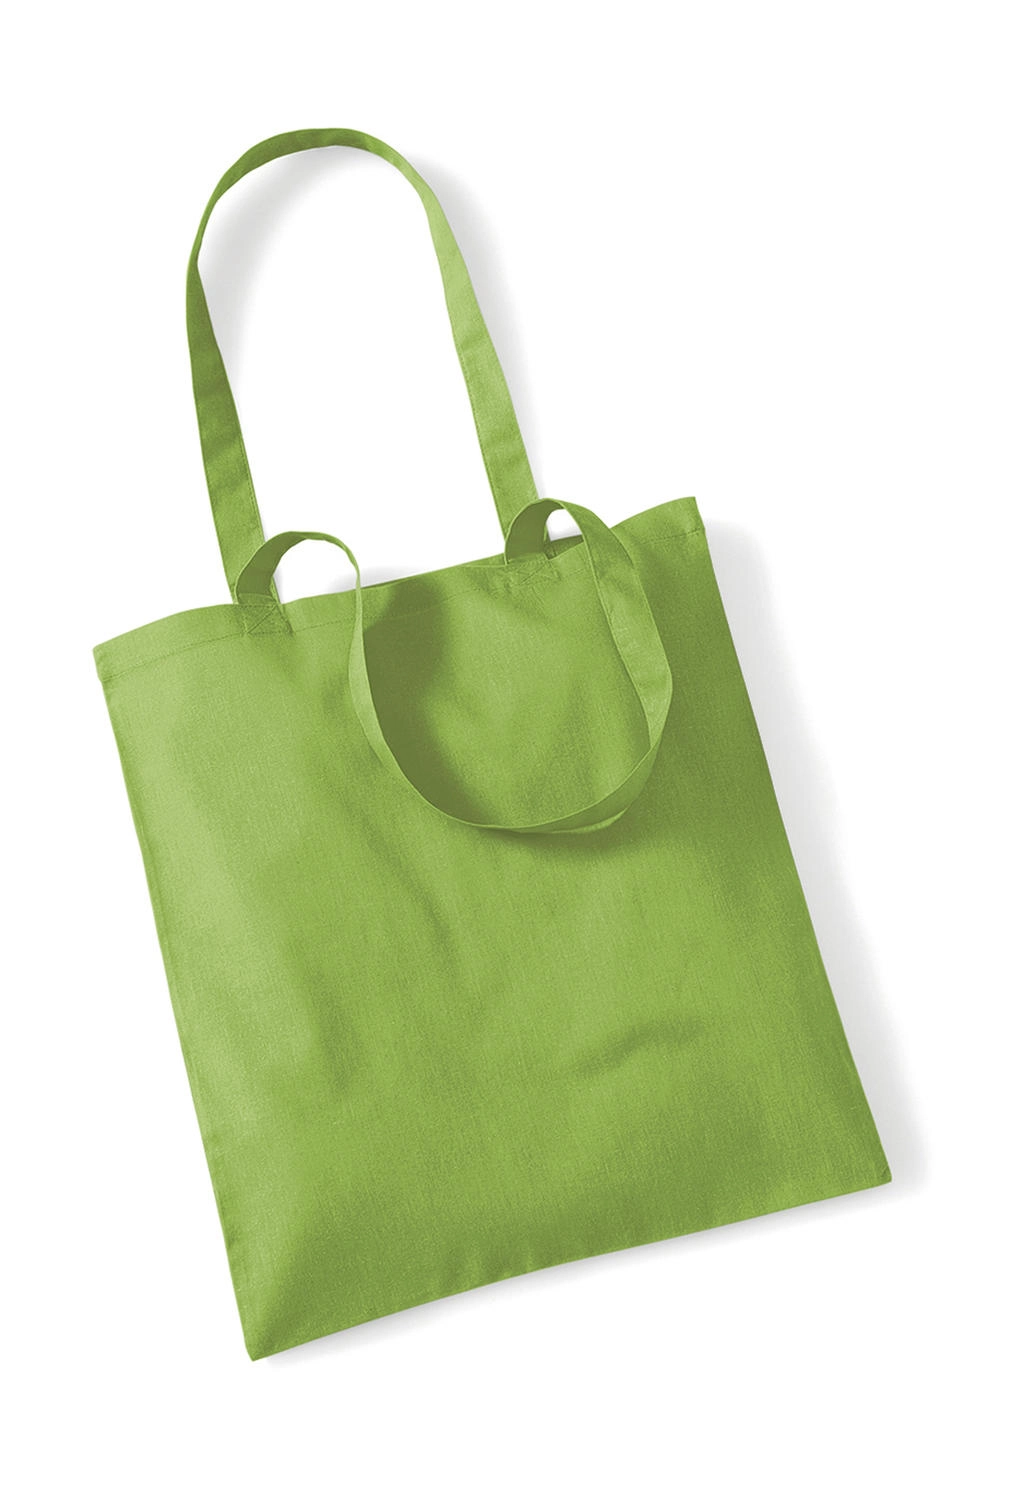 Bag for Life - Long Handles zum Besticken und Bedrucken in der Farbe Kiwi mit Ihren Logo, Schriftzug oder Motiv.